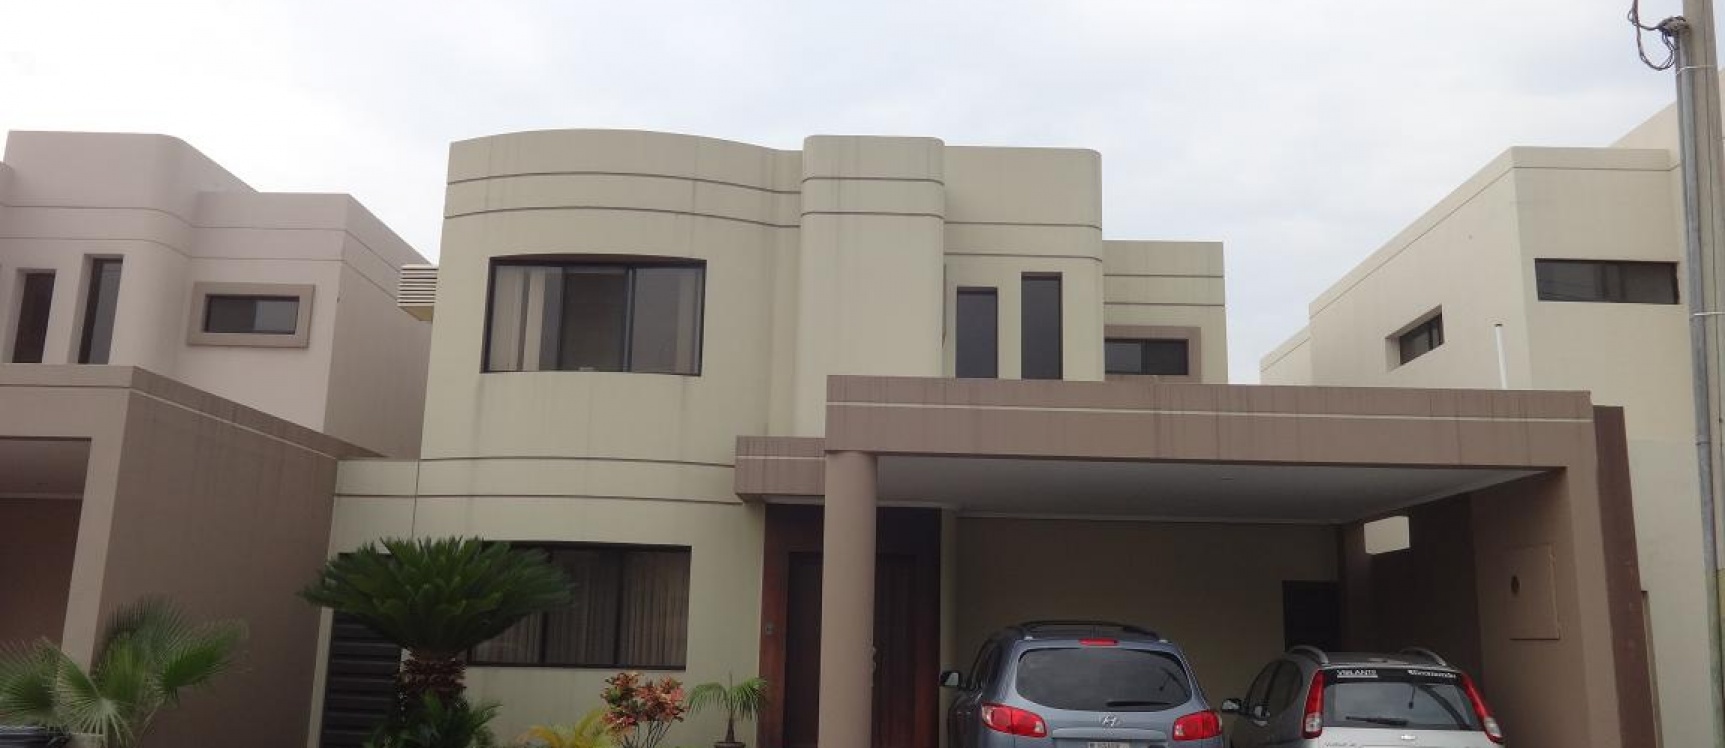 GeoBienes - Vendo Casa en Samborondon, Km 2 1/2 atras de la UEES - Plusvalia Guayaquil Casas de venta y alquiler Inmobiliaria Ecuador